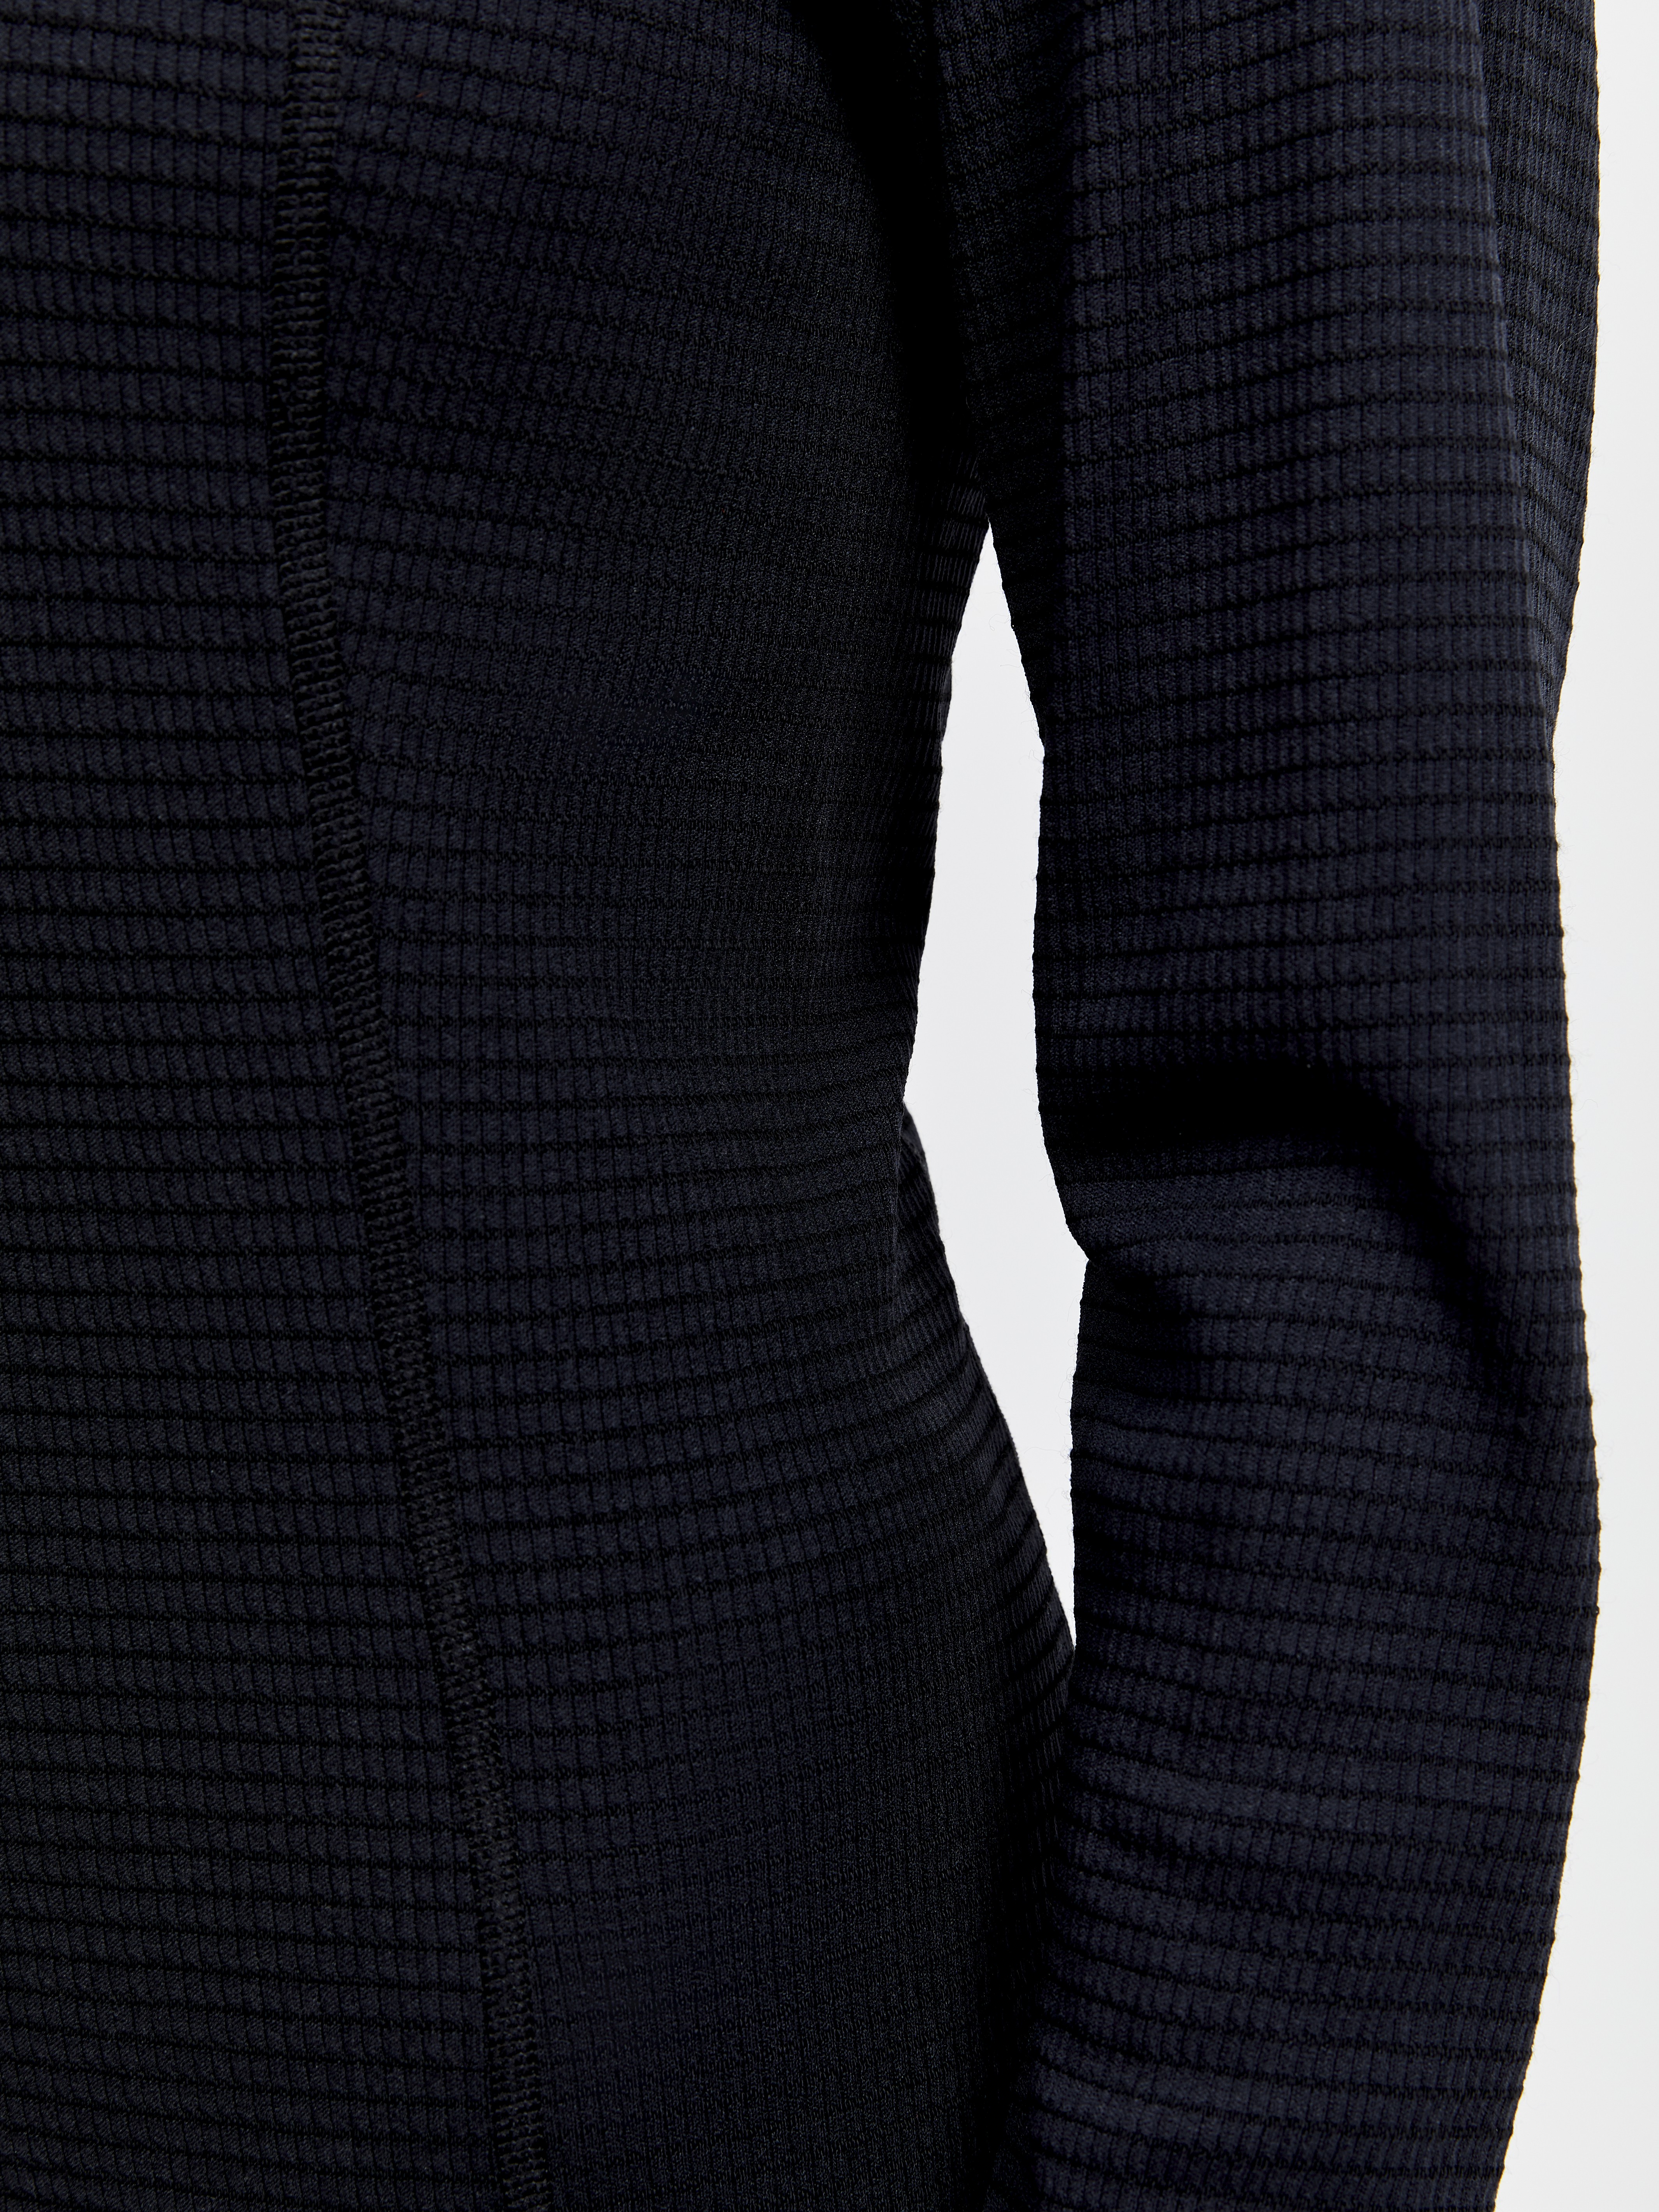 Craft Pro Wool Extreme X LS - Sous-vêtement thermique homme